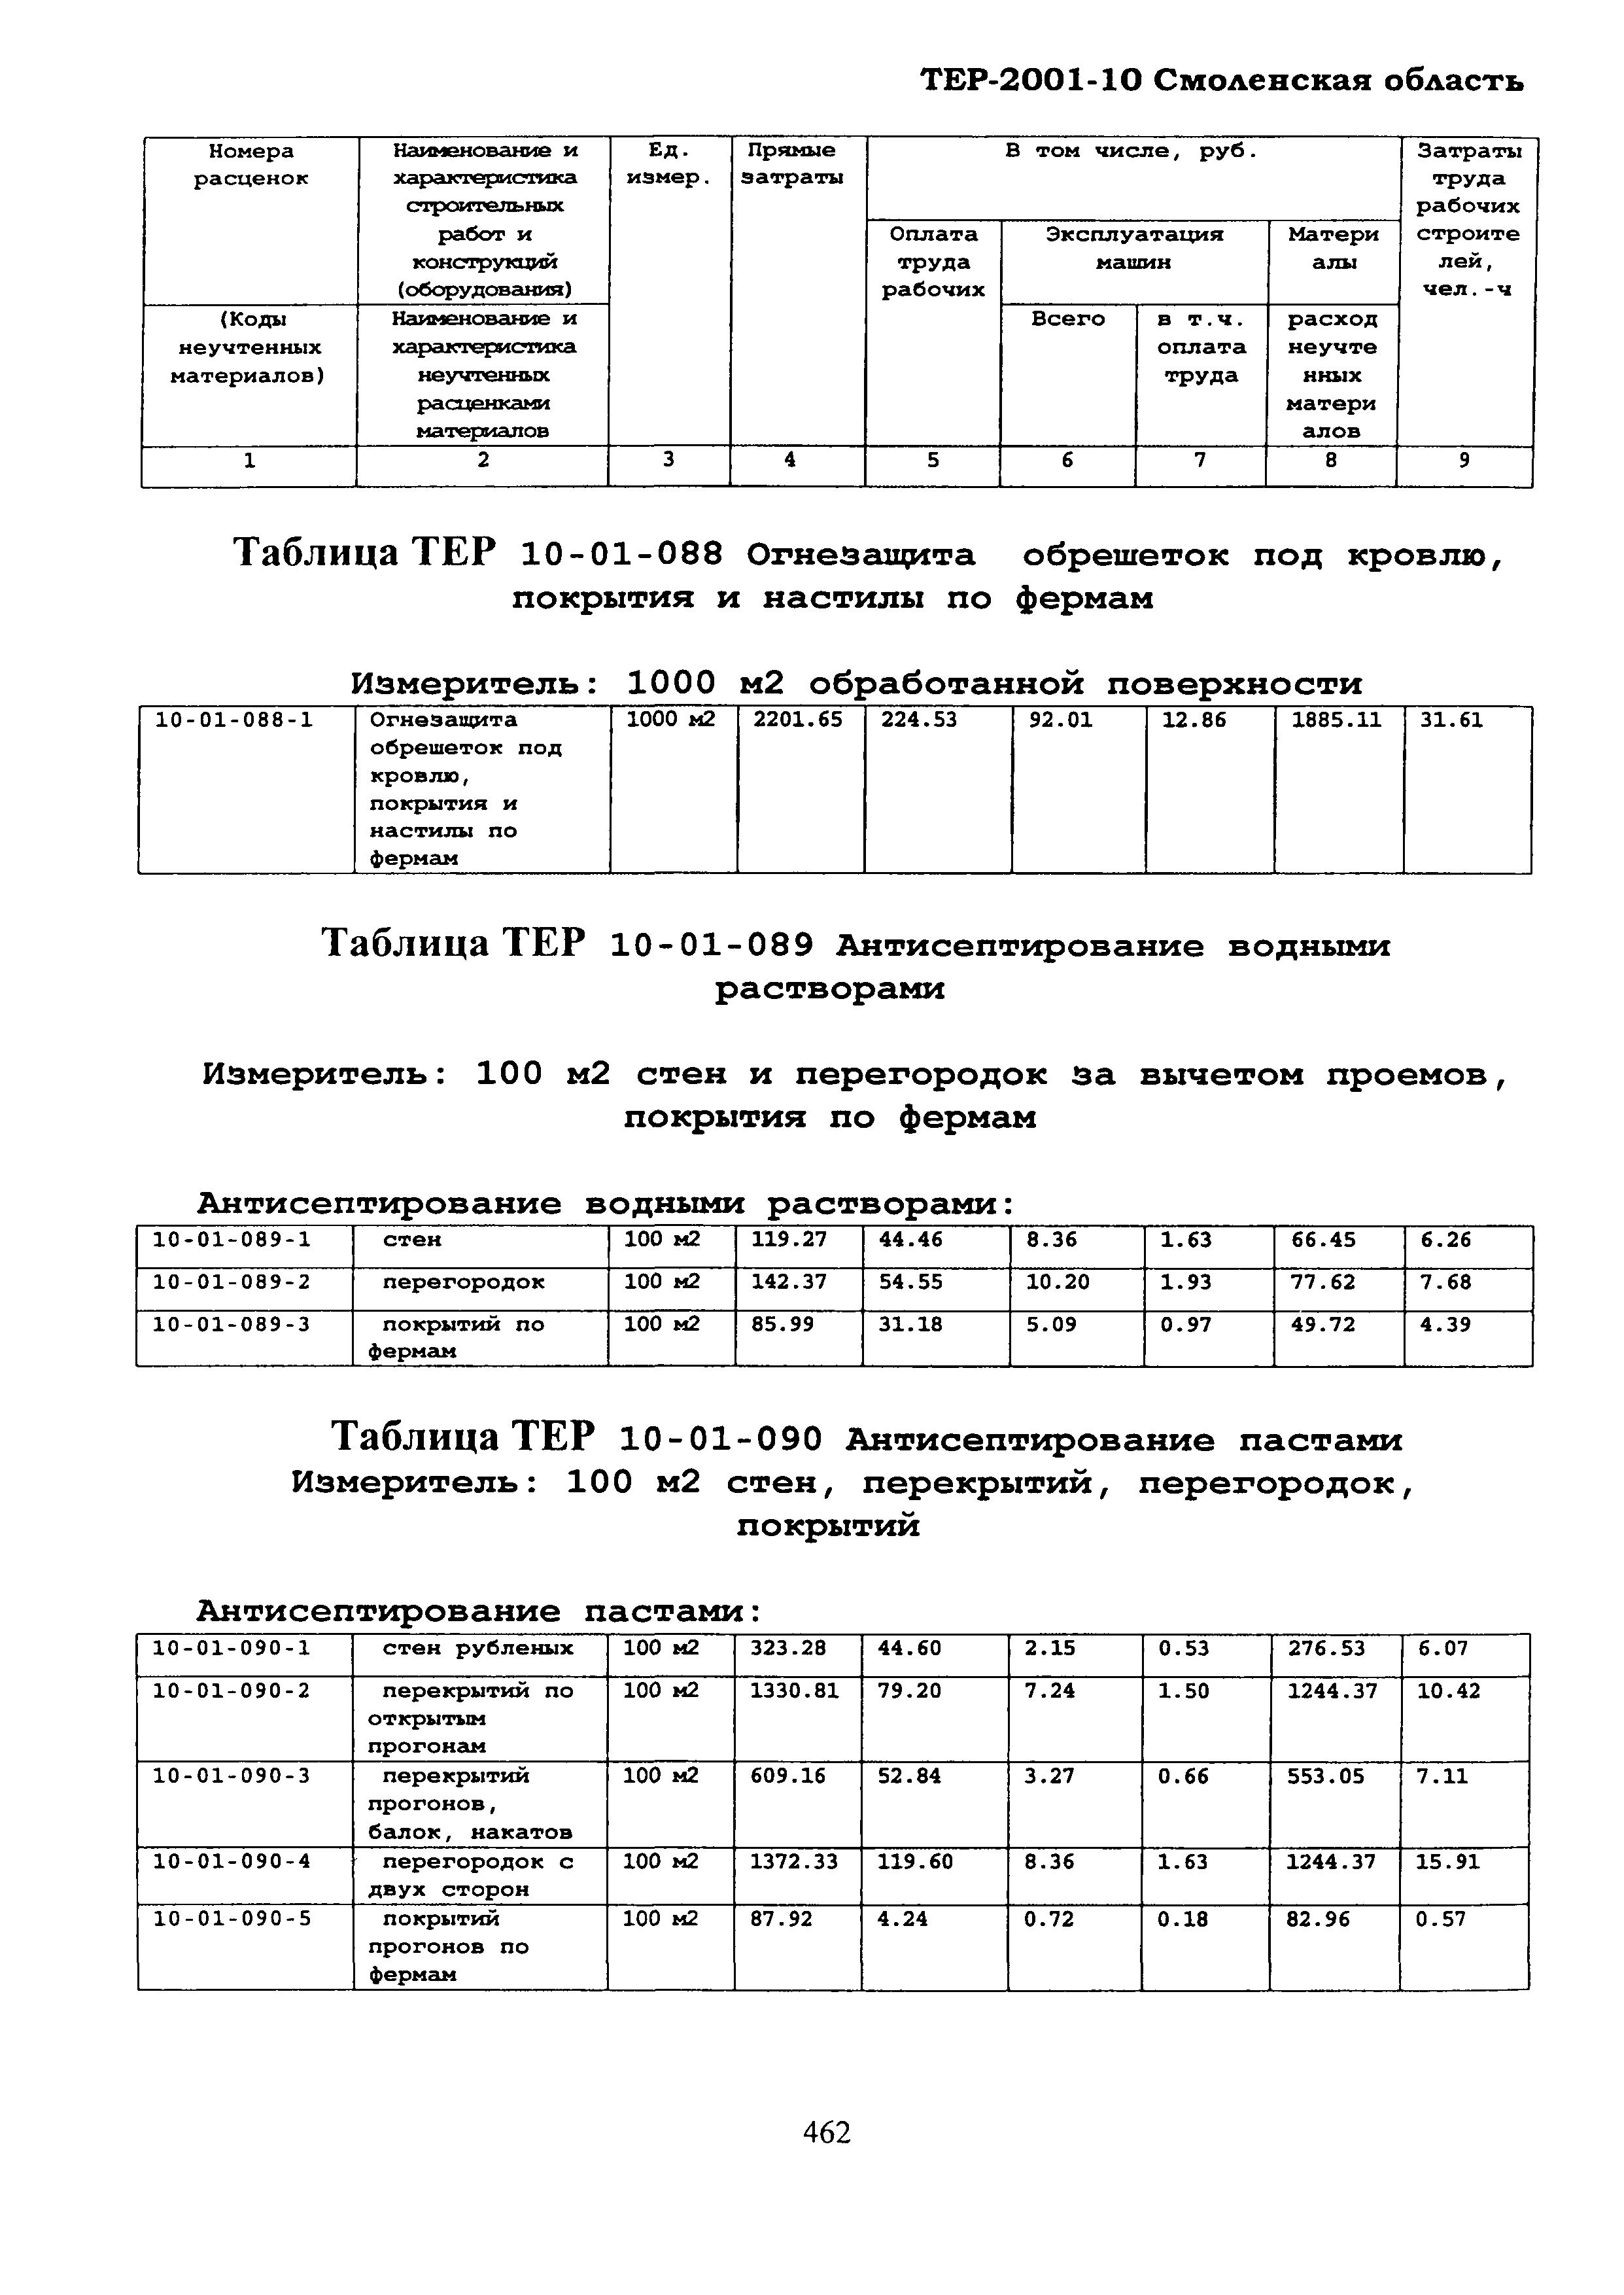 ТЕР Смоленская область 2001-10